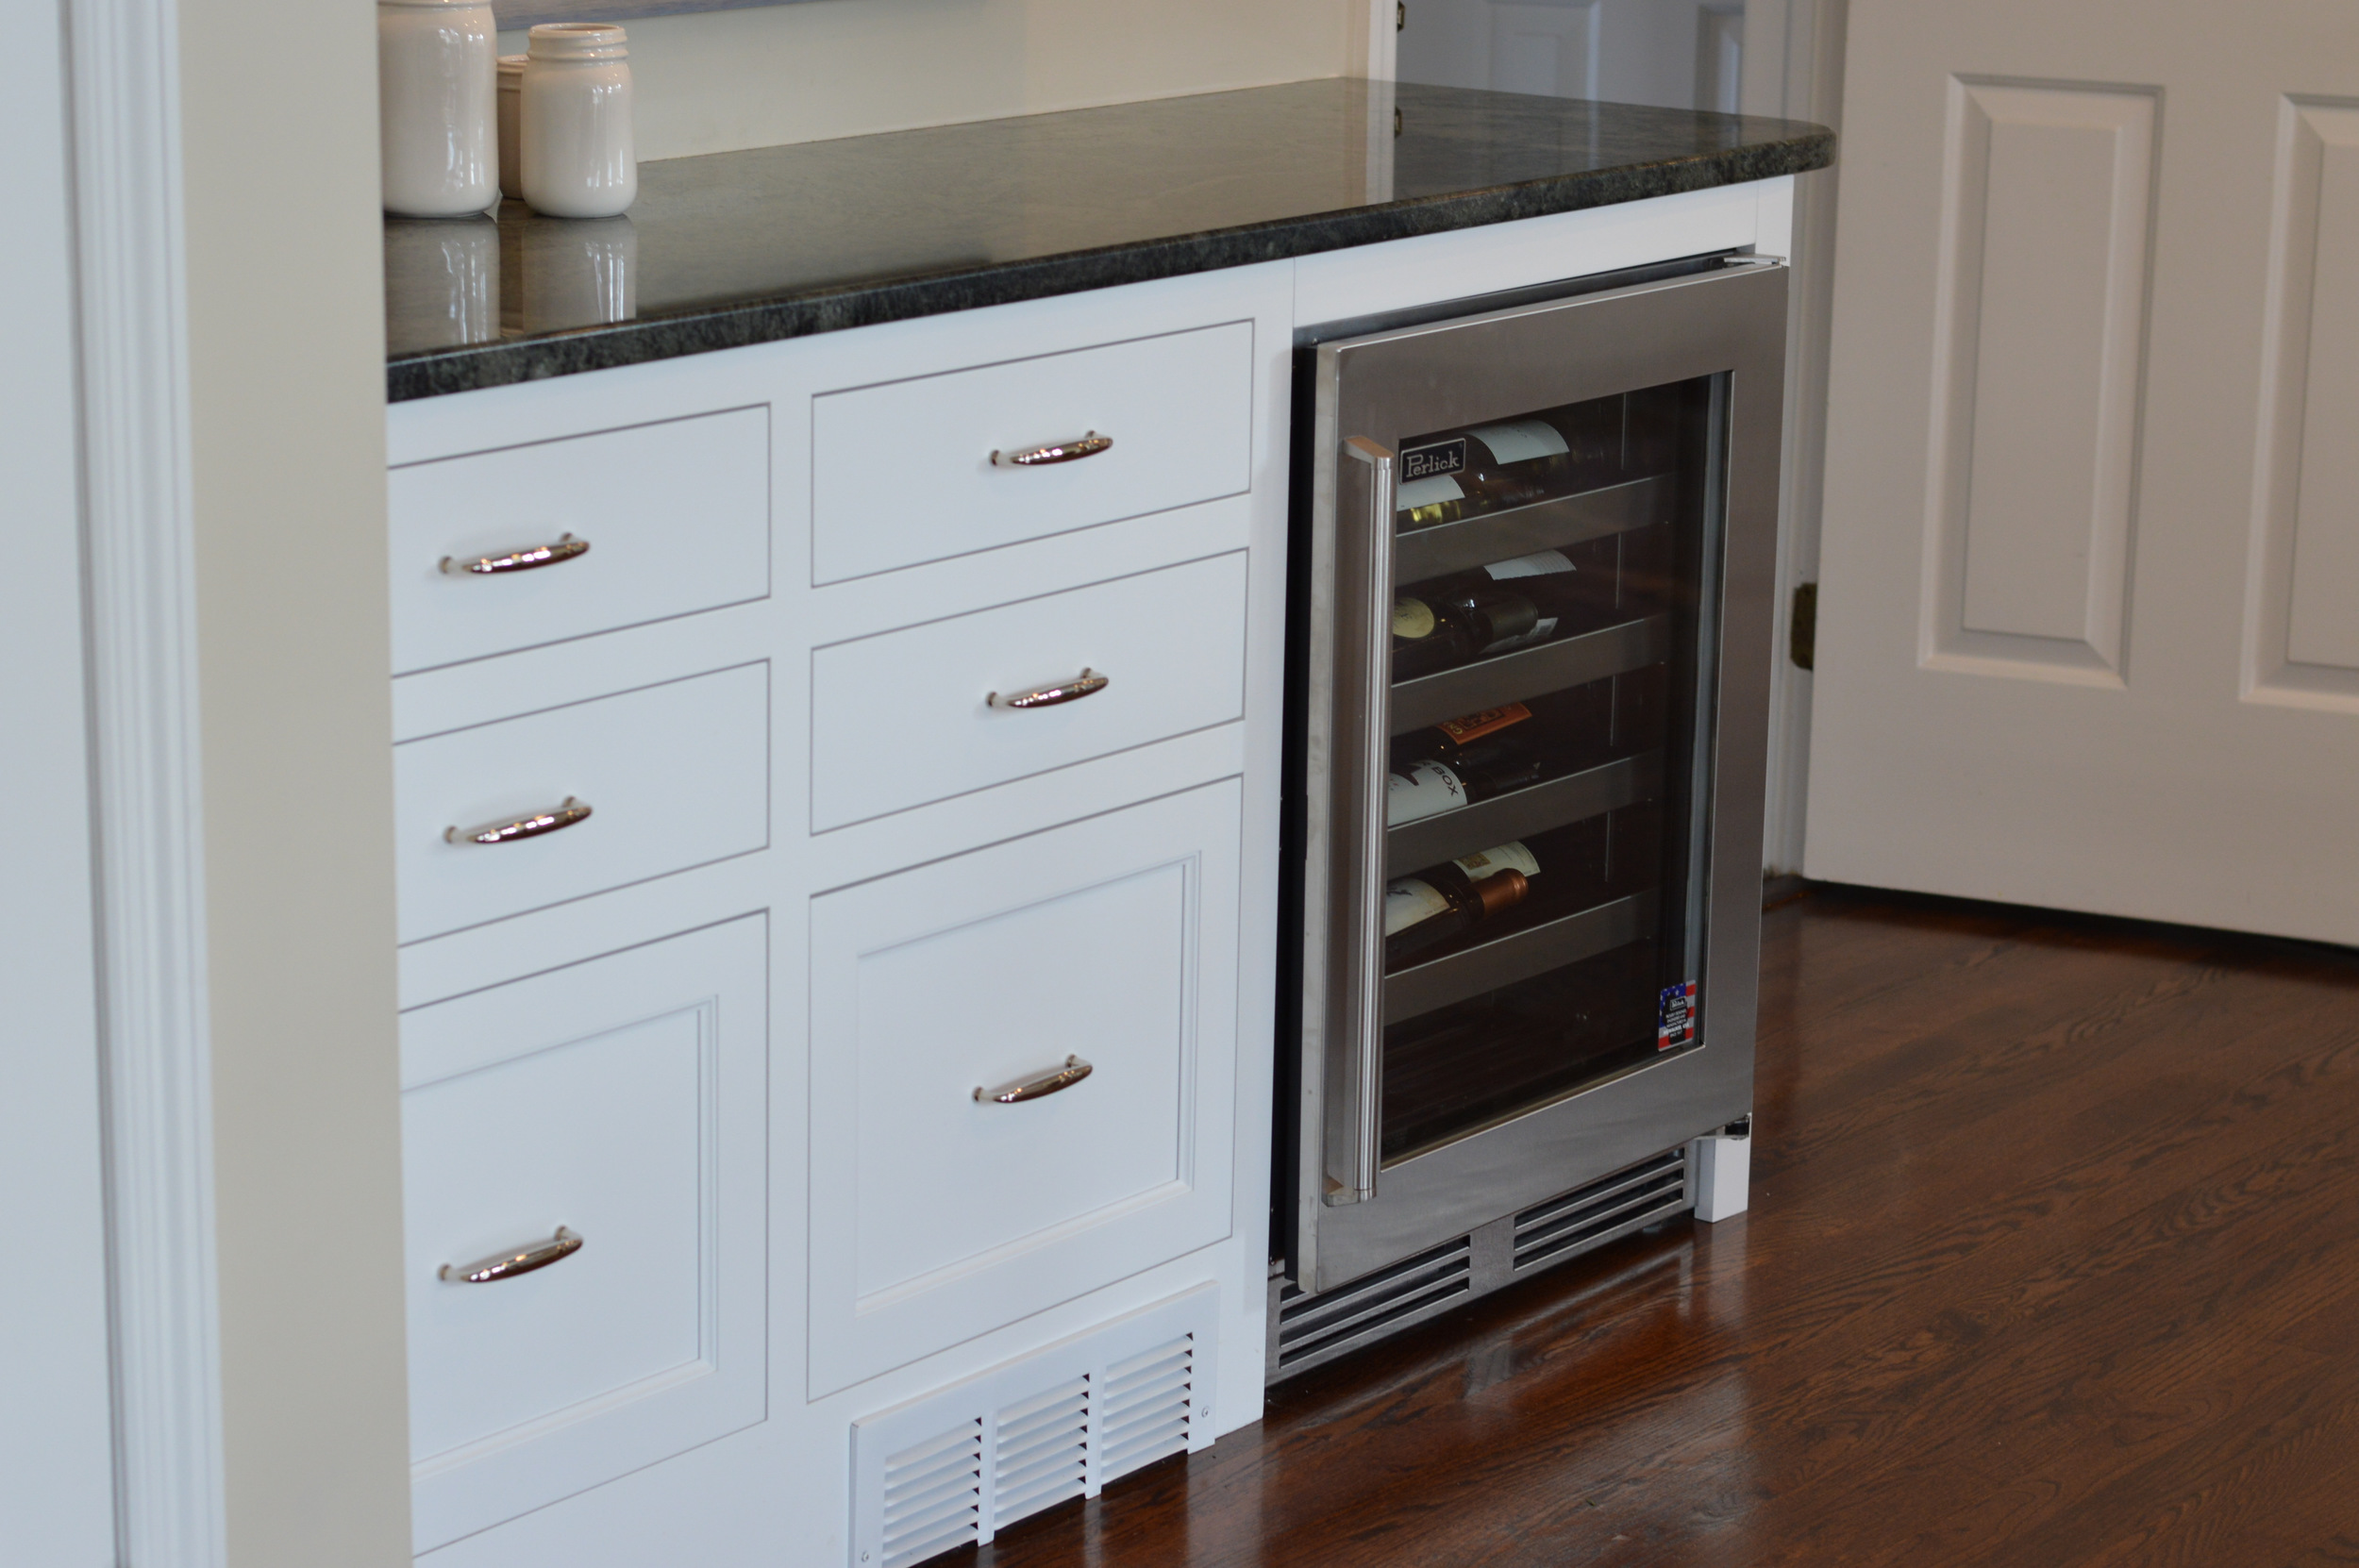 亚博让球平厨房吧台冷却器-白色嵌入式橱柜抽屉